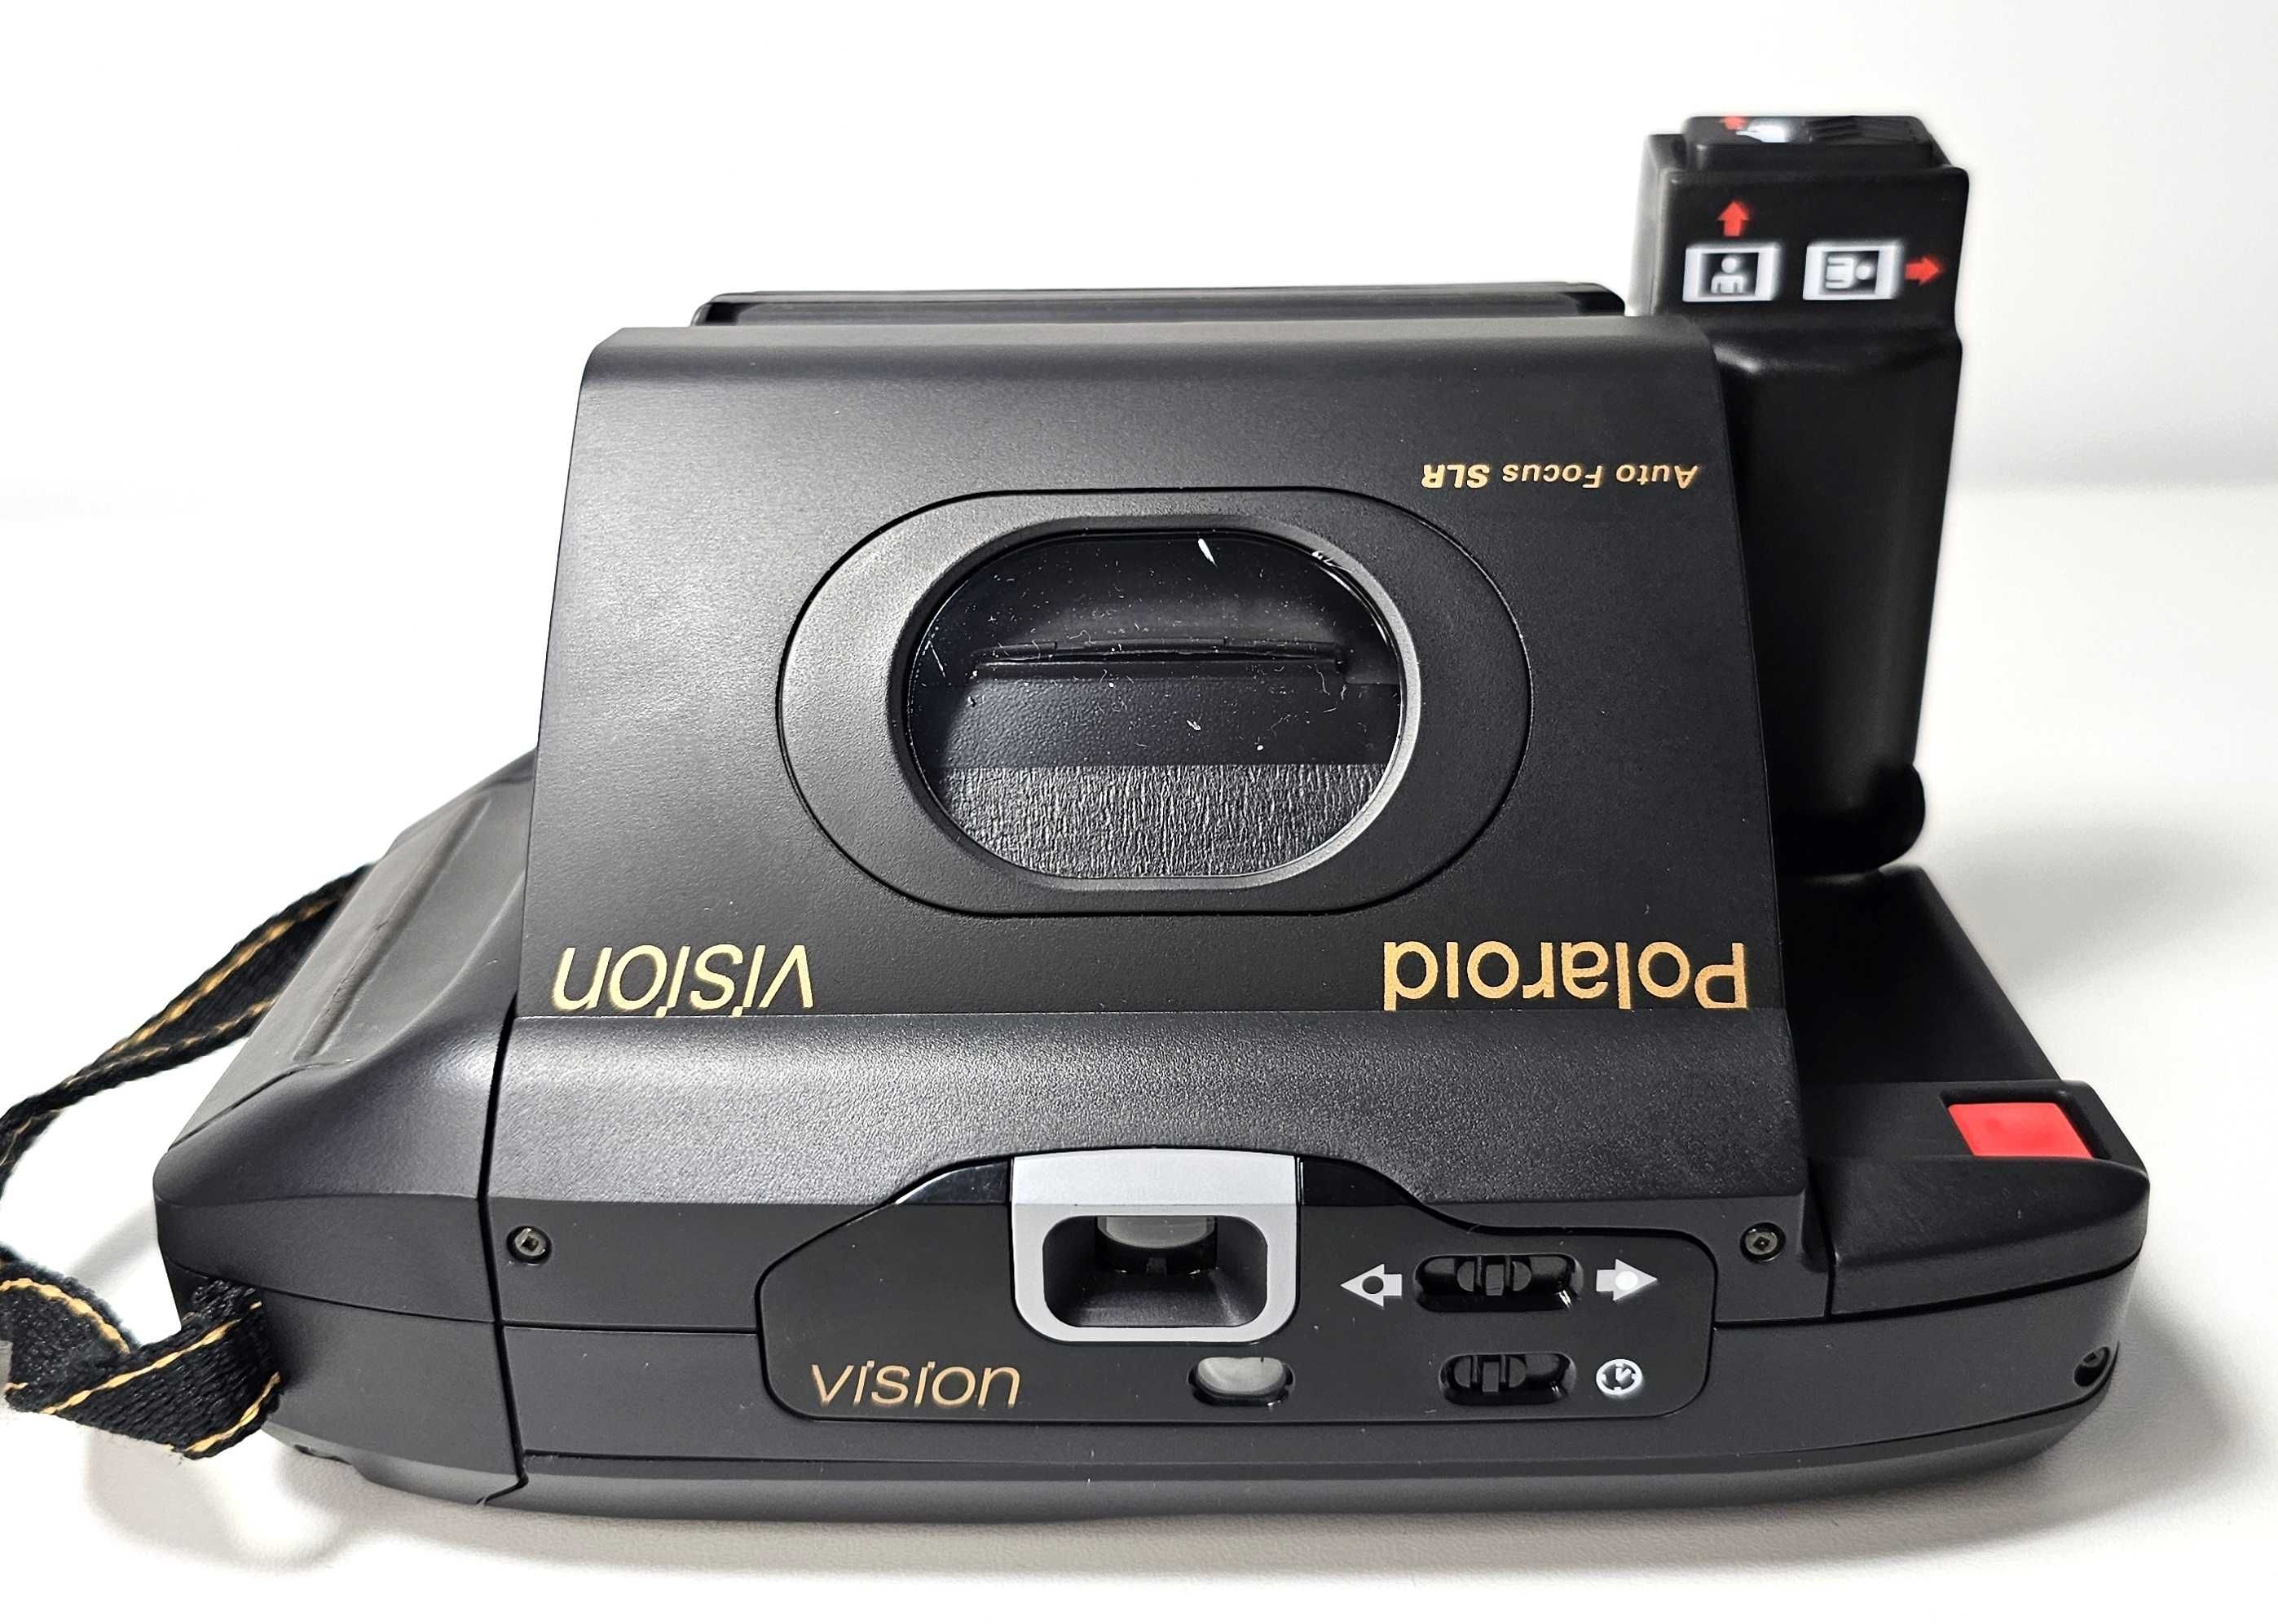 Polaroid Vision Auto Focus SLR + Etui